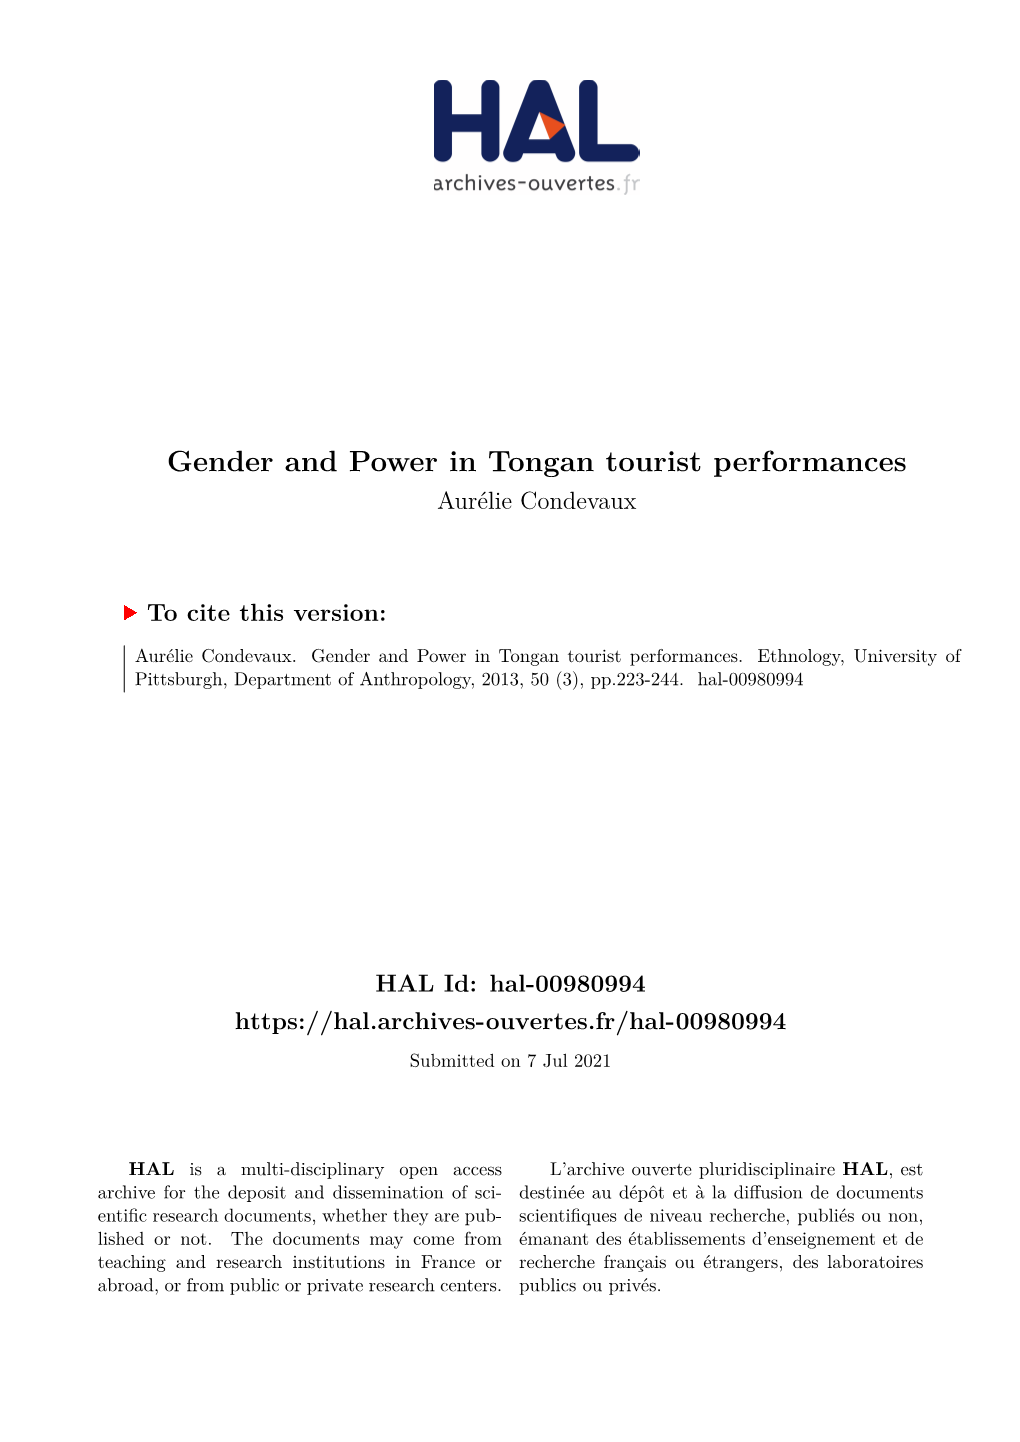 Gender and Power in Tongan Tourist Performances Aurélie Condevaux